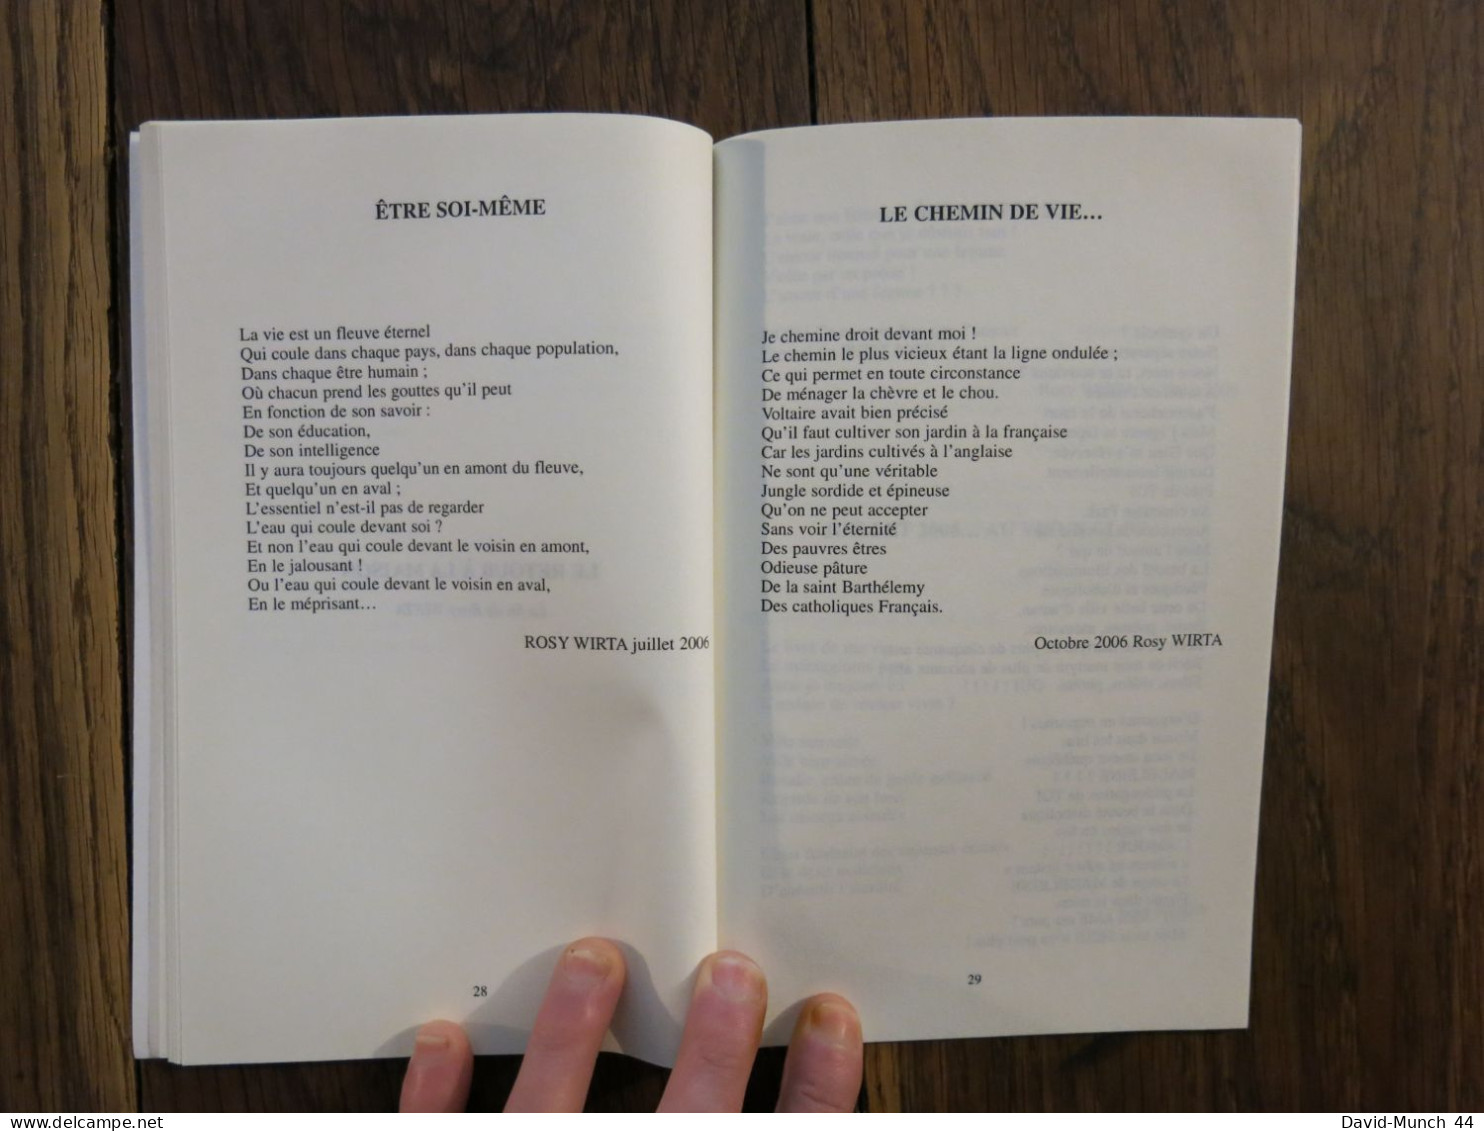 Le martyre dans ma tête, La vie de Rosy Wirta de Marie-Françoise François. La Bruyère éditions. 2007